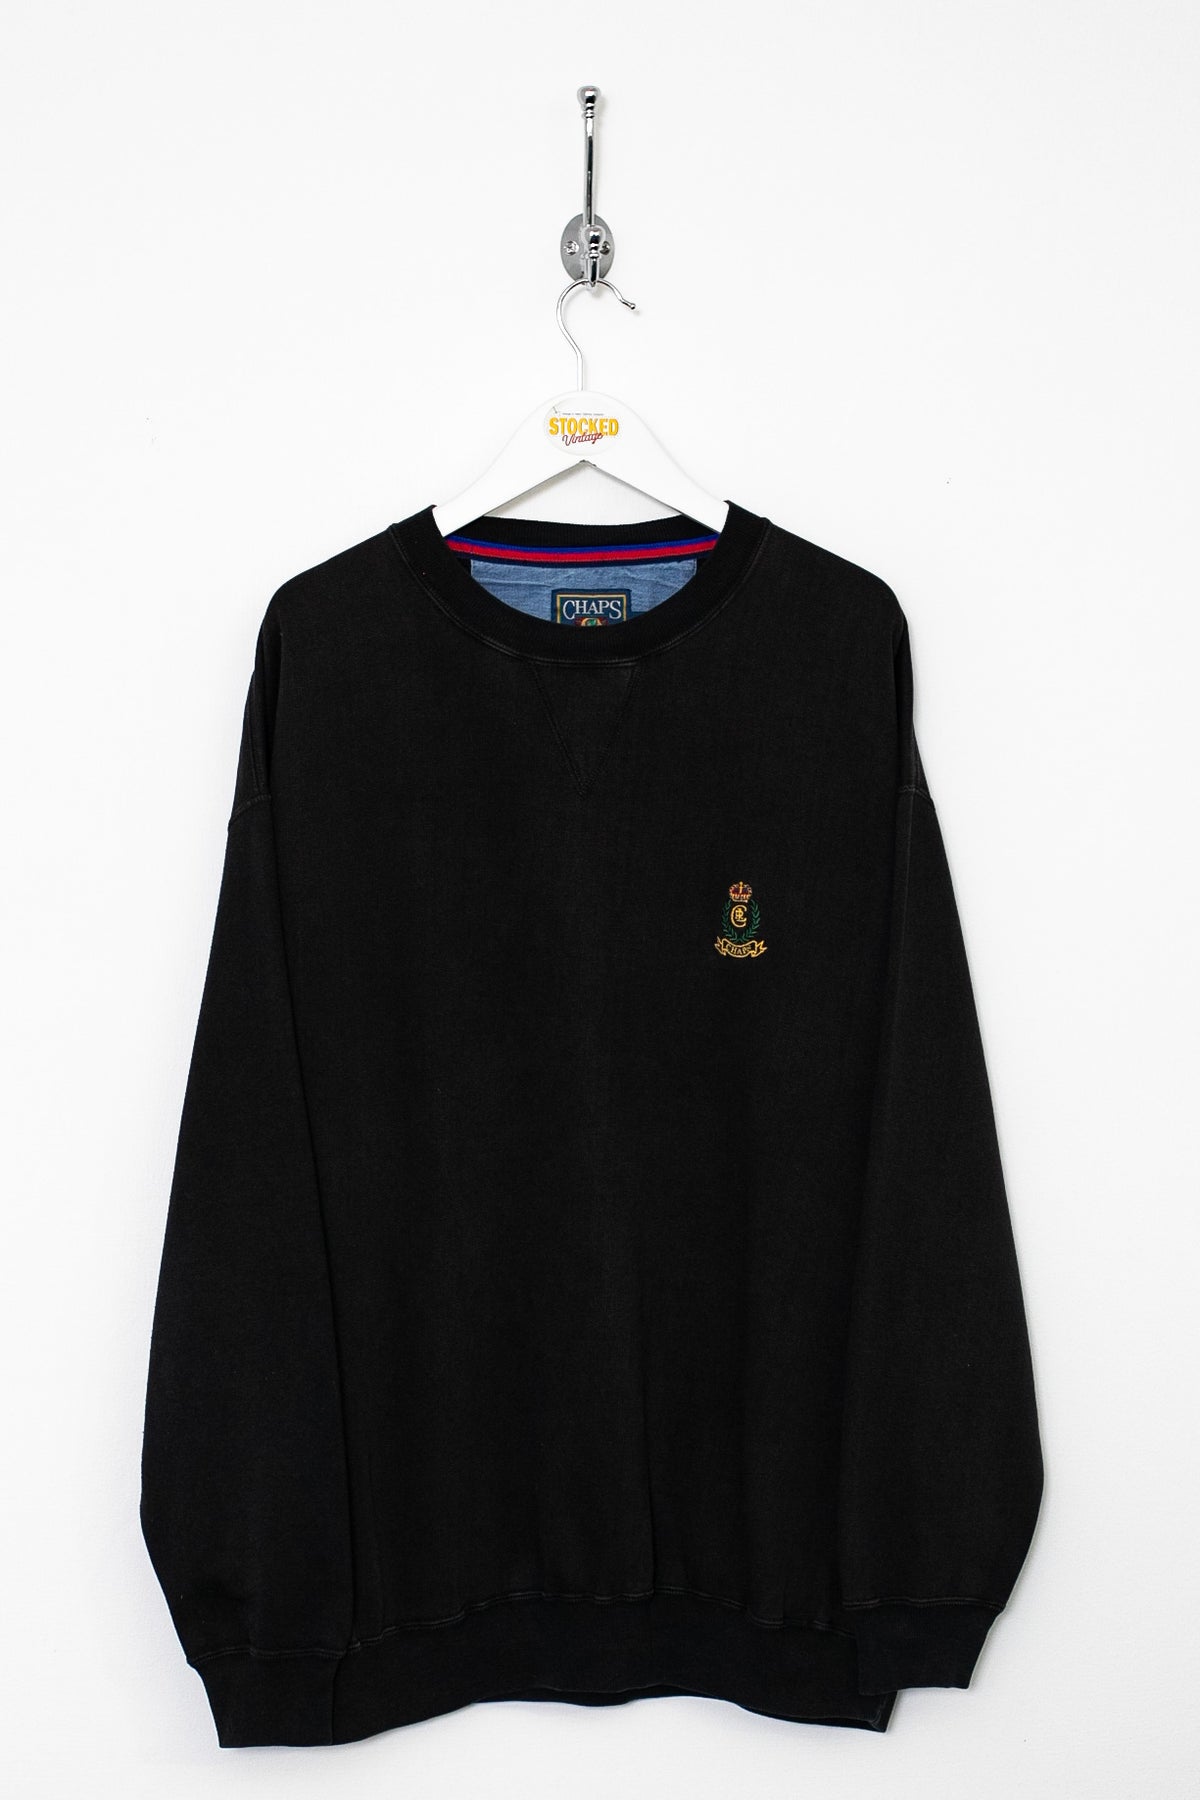 90s Ralph Lauren Chaps Sweatshirt (L)